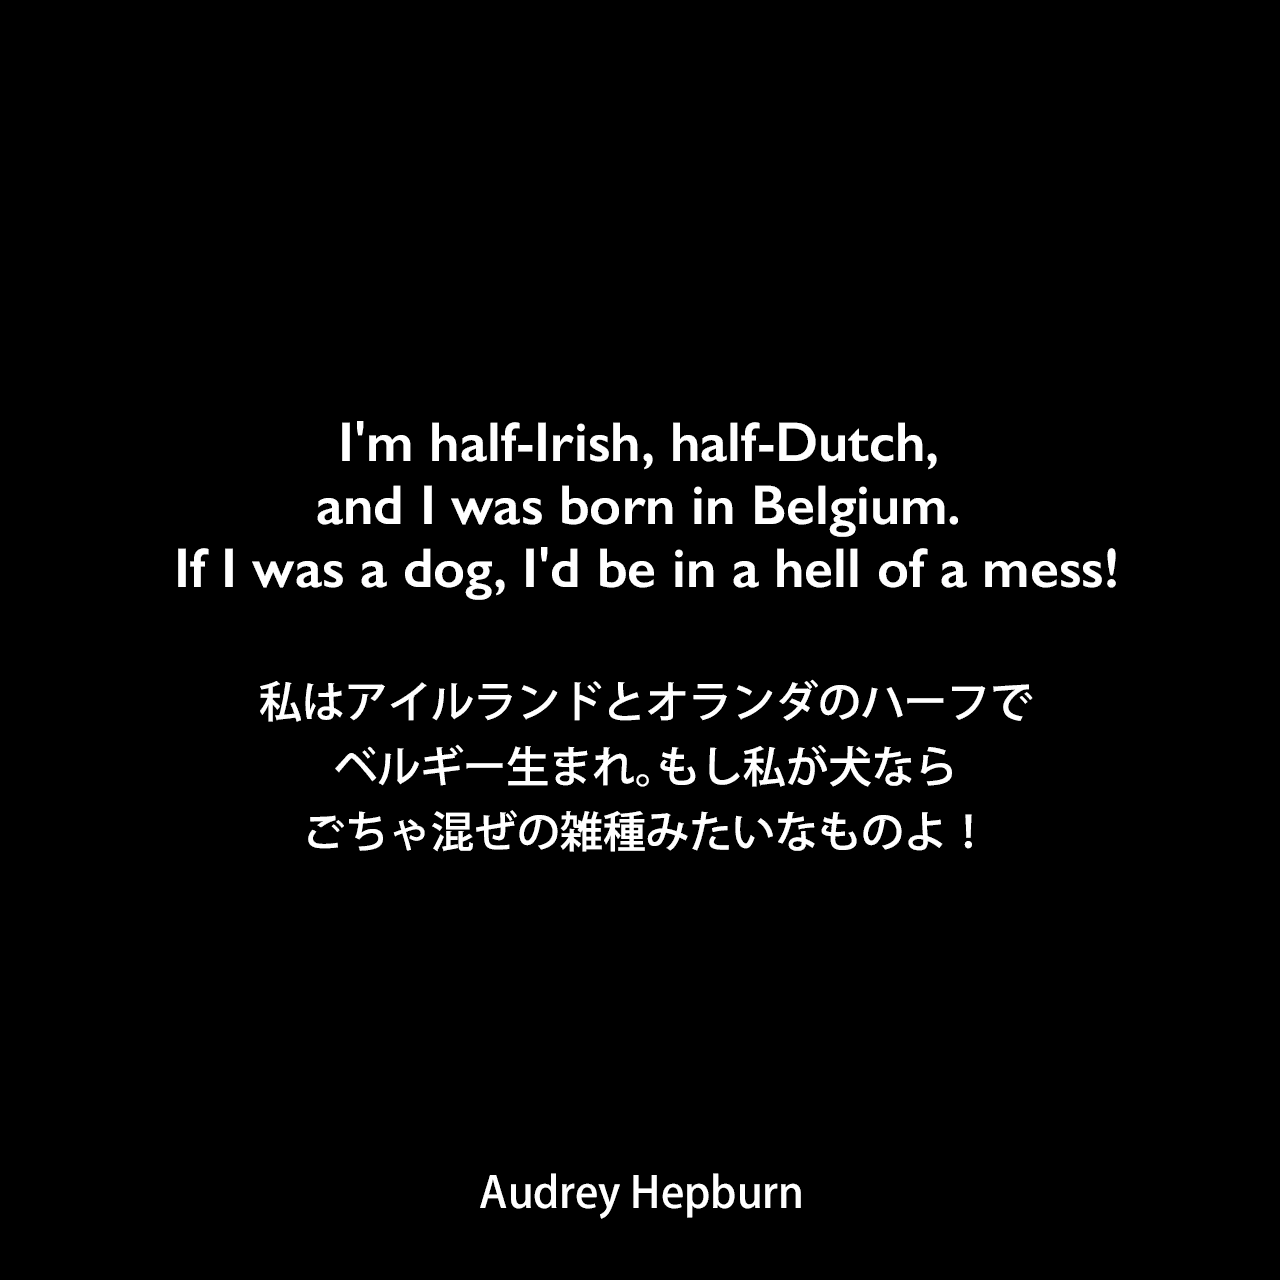 I'm half-Irish, half-Dutch, and I was born in Belgium. If I was a dog, I'd be in a hell of a mess!私はアイルランドとオランダのハーフでベルギー生まれ。もし私が犬ならごちゃ混ぜの雑種みたいなものよ！- Barry Parisの本「Audrey Hepburn」よりAudrey Hepburn